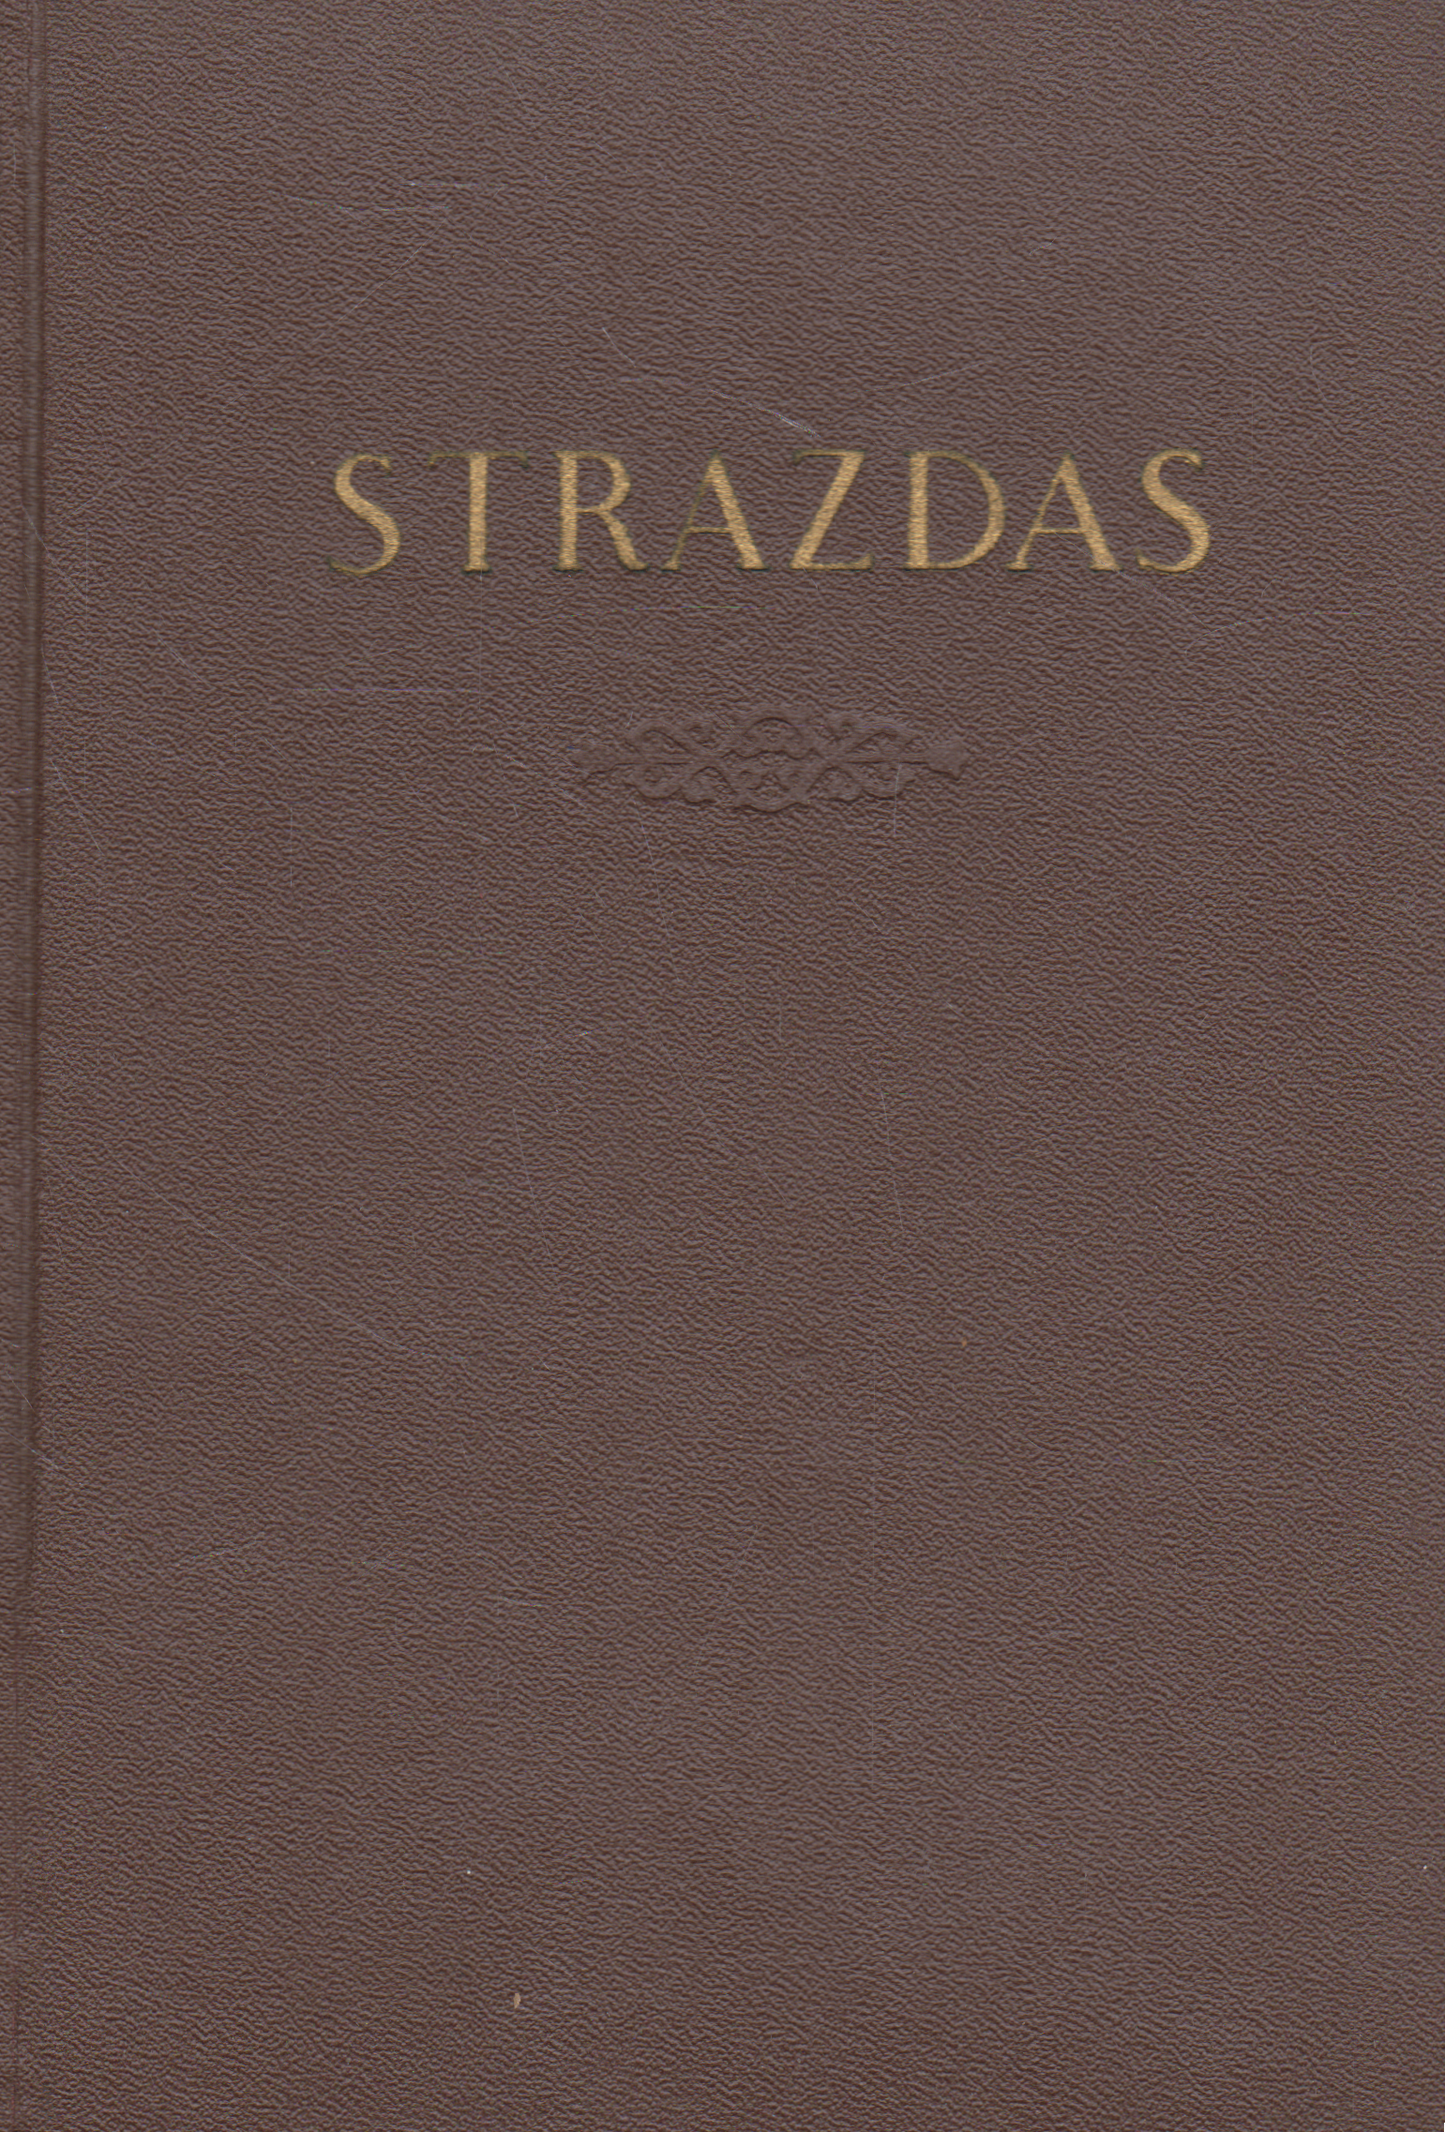 Antanas Strazdas - Raštai